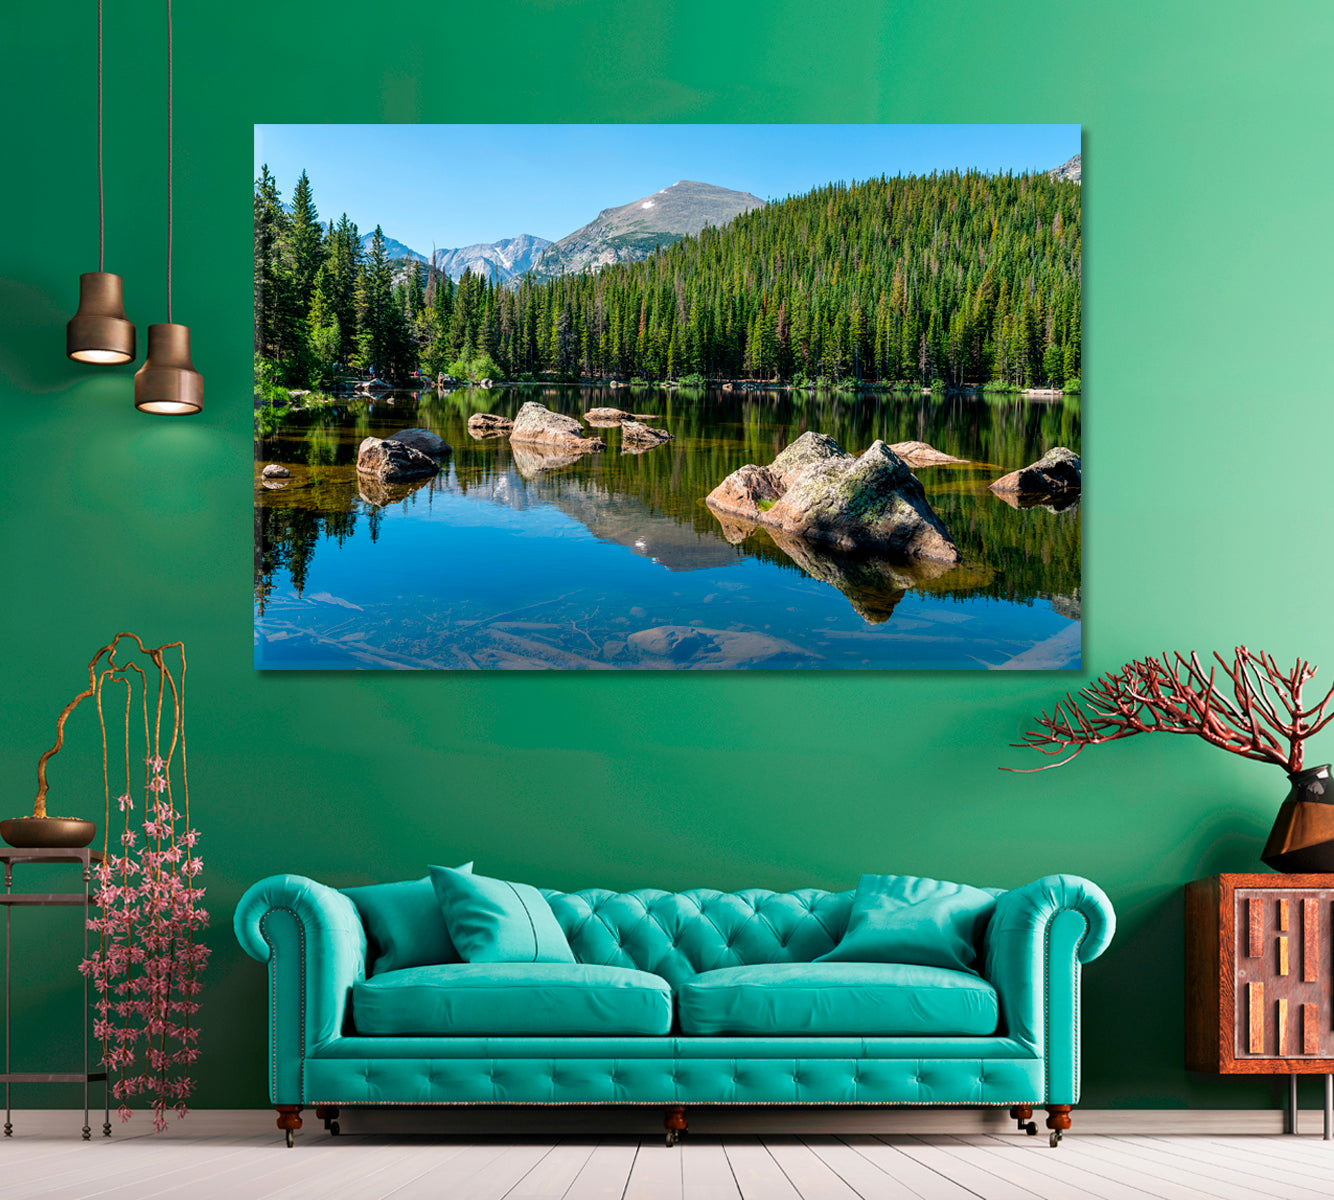 Bear Lake in Rocky Mountain National Park Colorado USA Canvas Print ArtLexy 1 Panel 24"x16" inches 